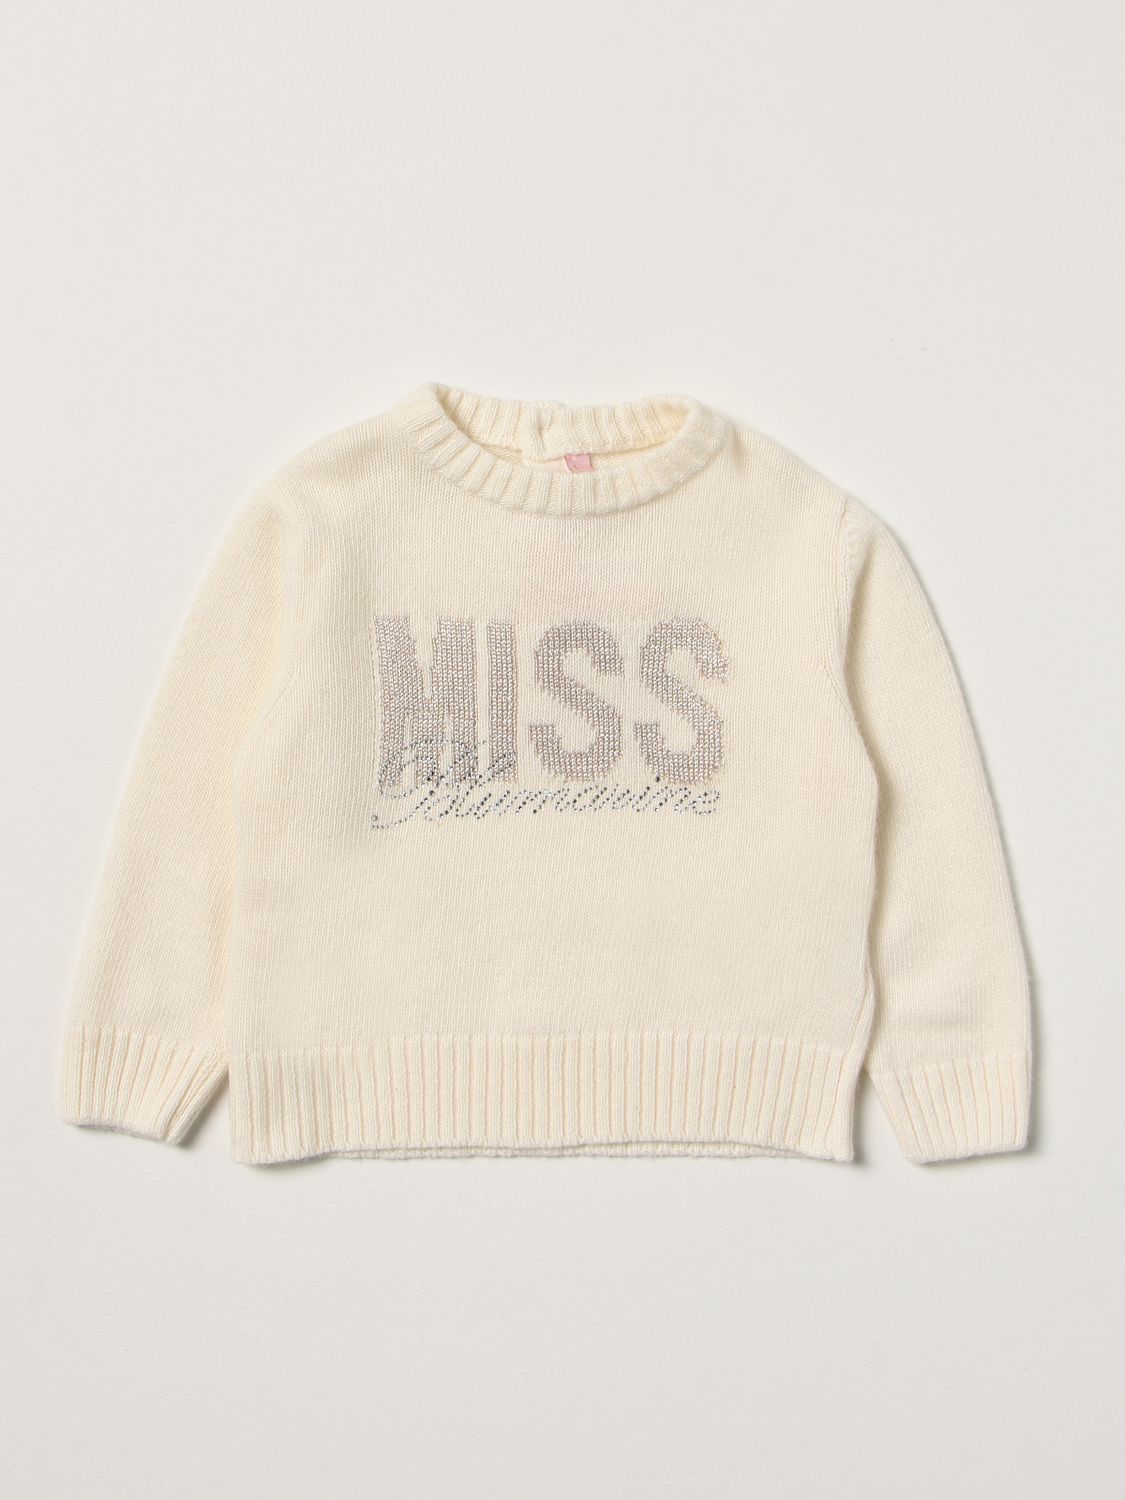 Sweater Miss Blumarine: Sweater kids Miss Blumarine yellow cream 1